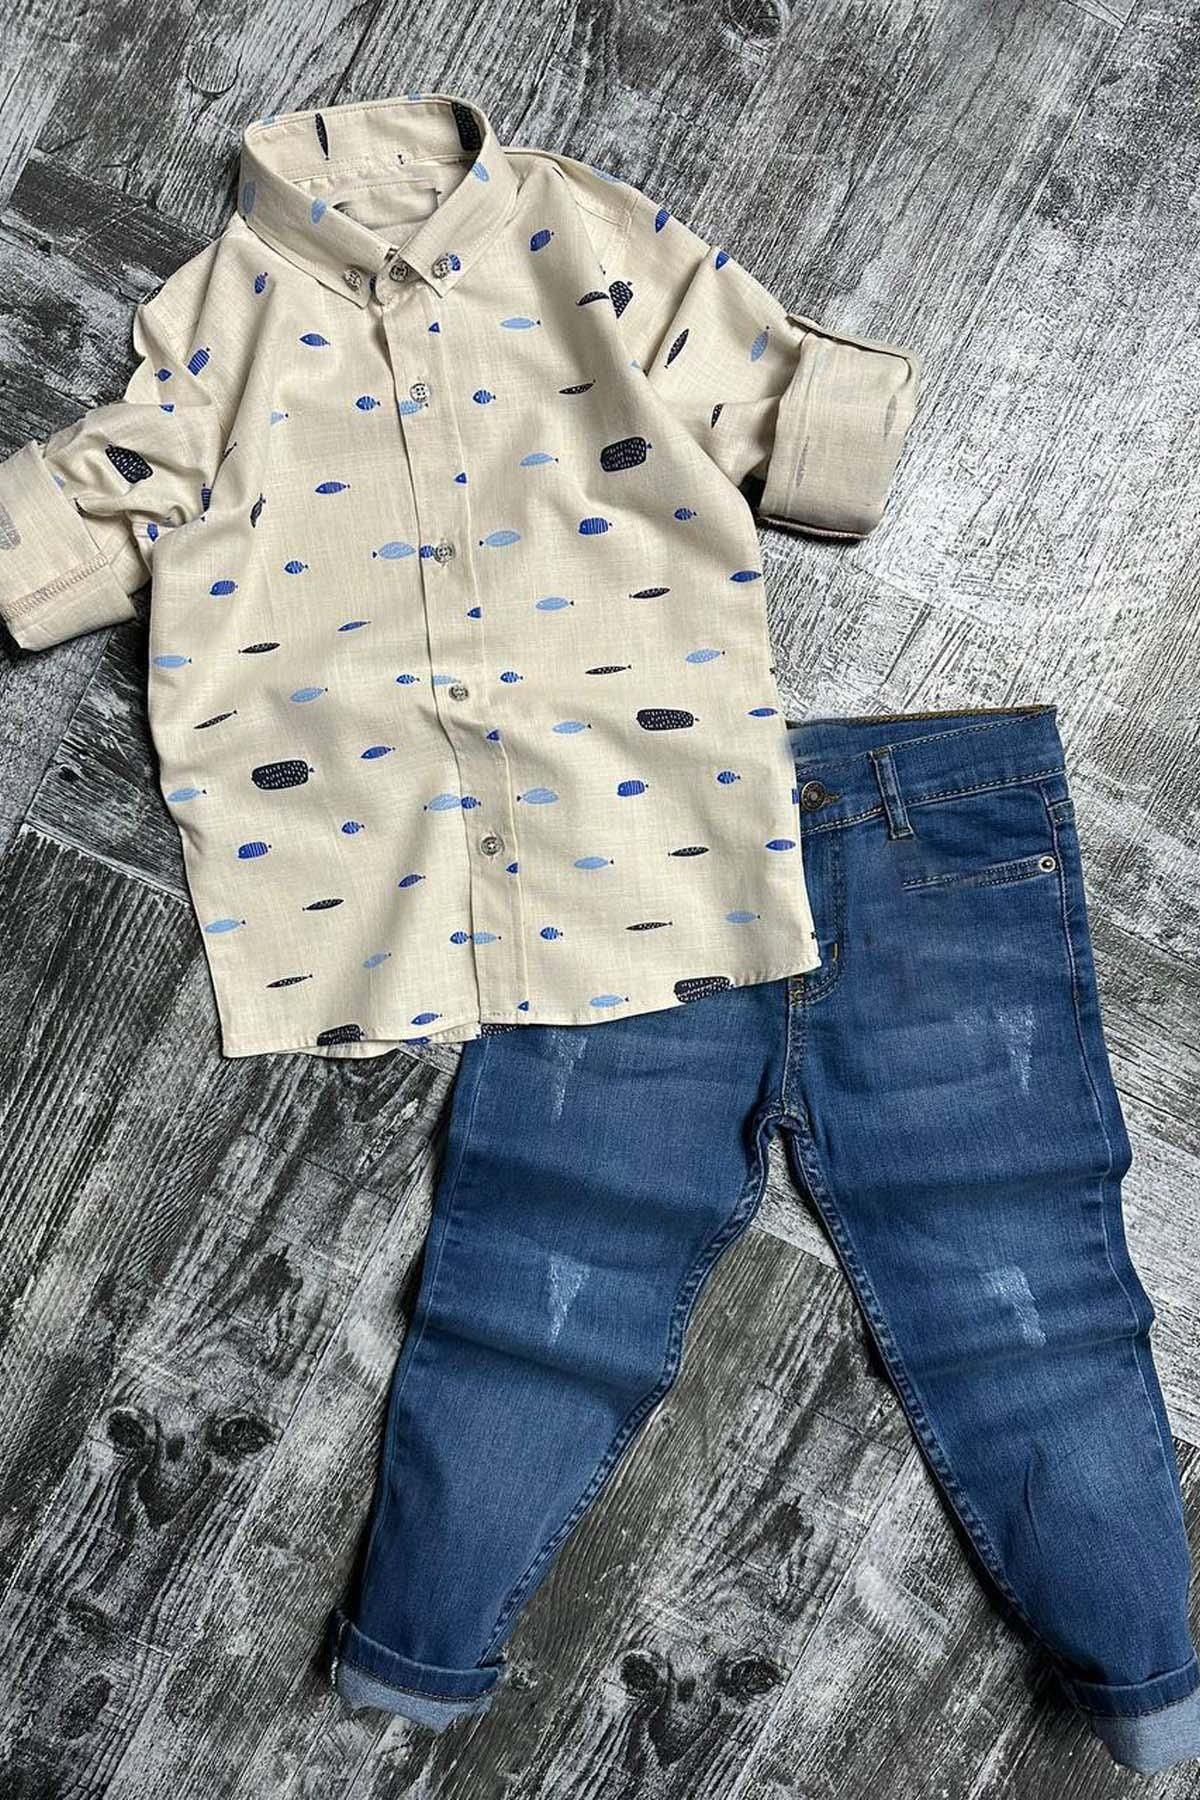 Riccotarz Erkek Çocuk Likralı Jeans Balık Baskılı Dokuma Bej Gömlek Alt Üst Takım